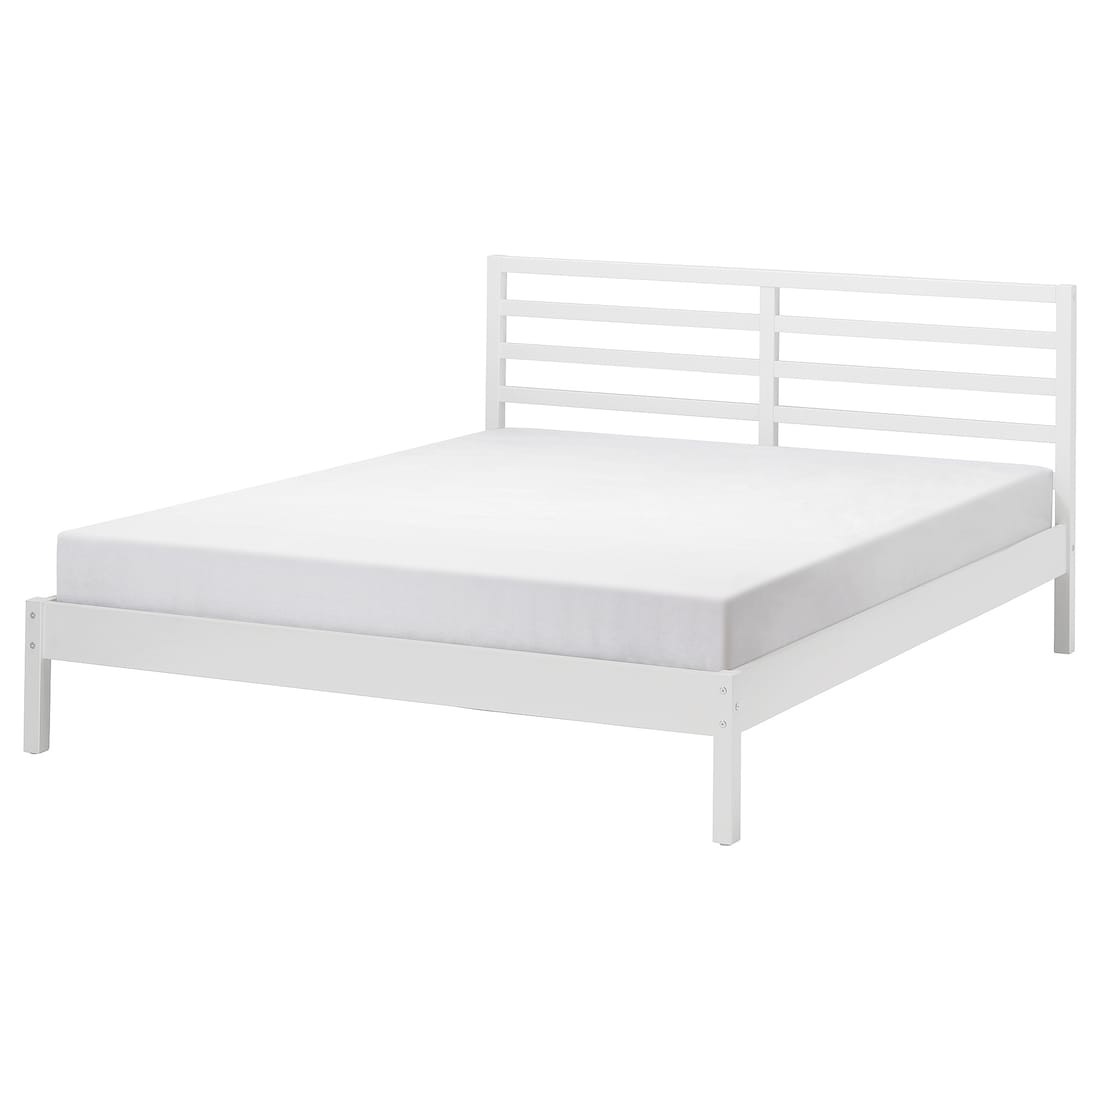 IKEA TARVA Кровать, белое морилка / Lindbåden, 140x200 см 79553936 795.539.36